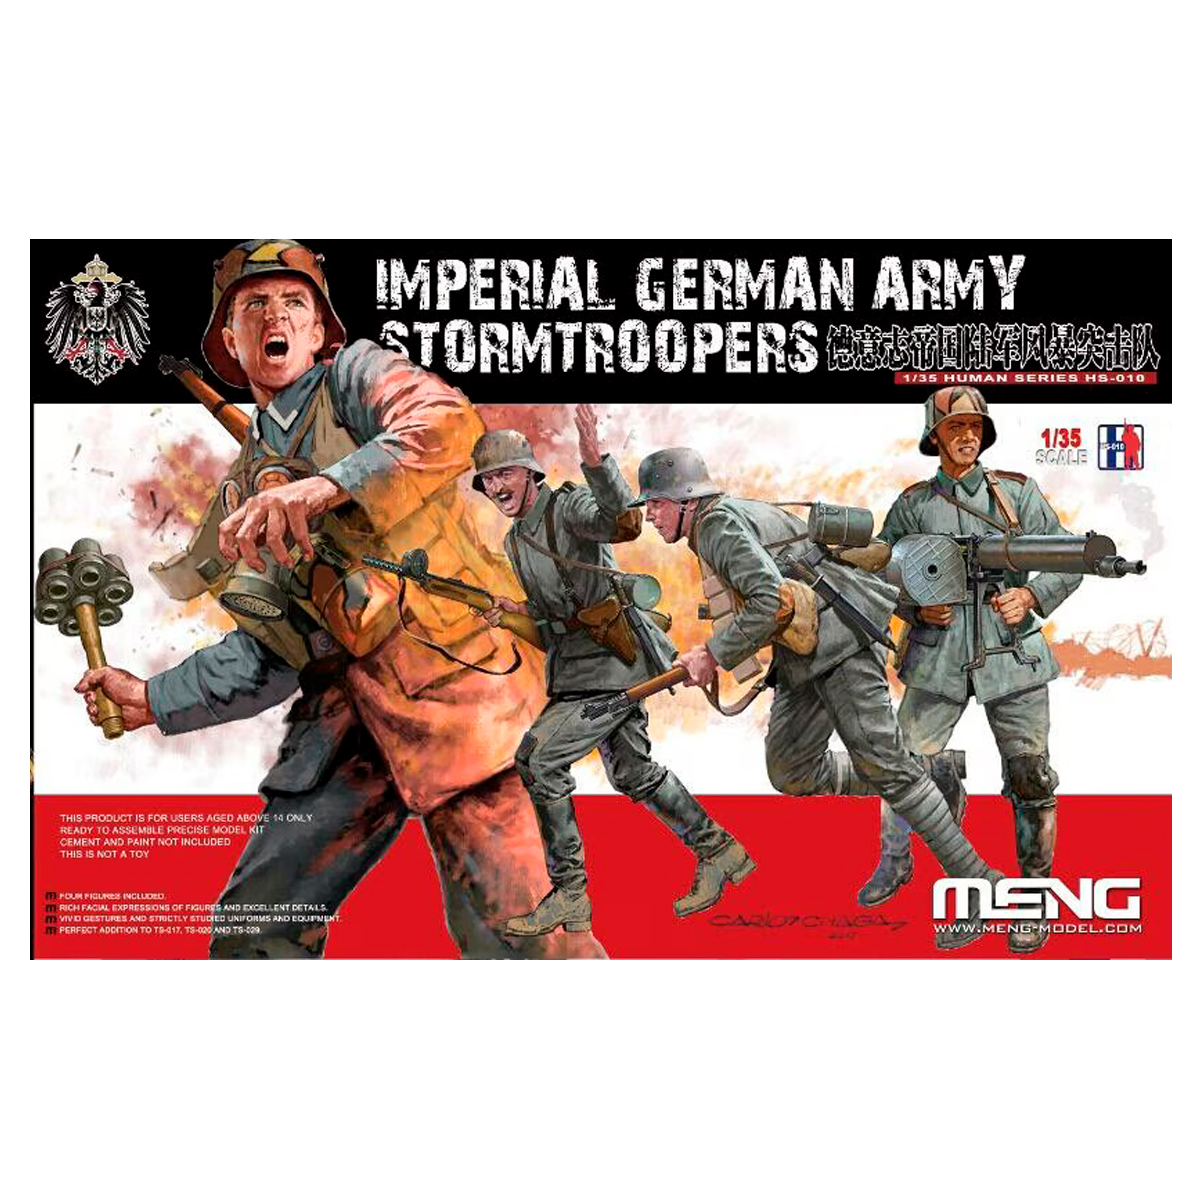 1/35 STORMTROOPERS IMPERIAL GERMAN ARMY